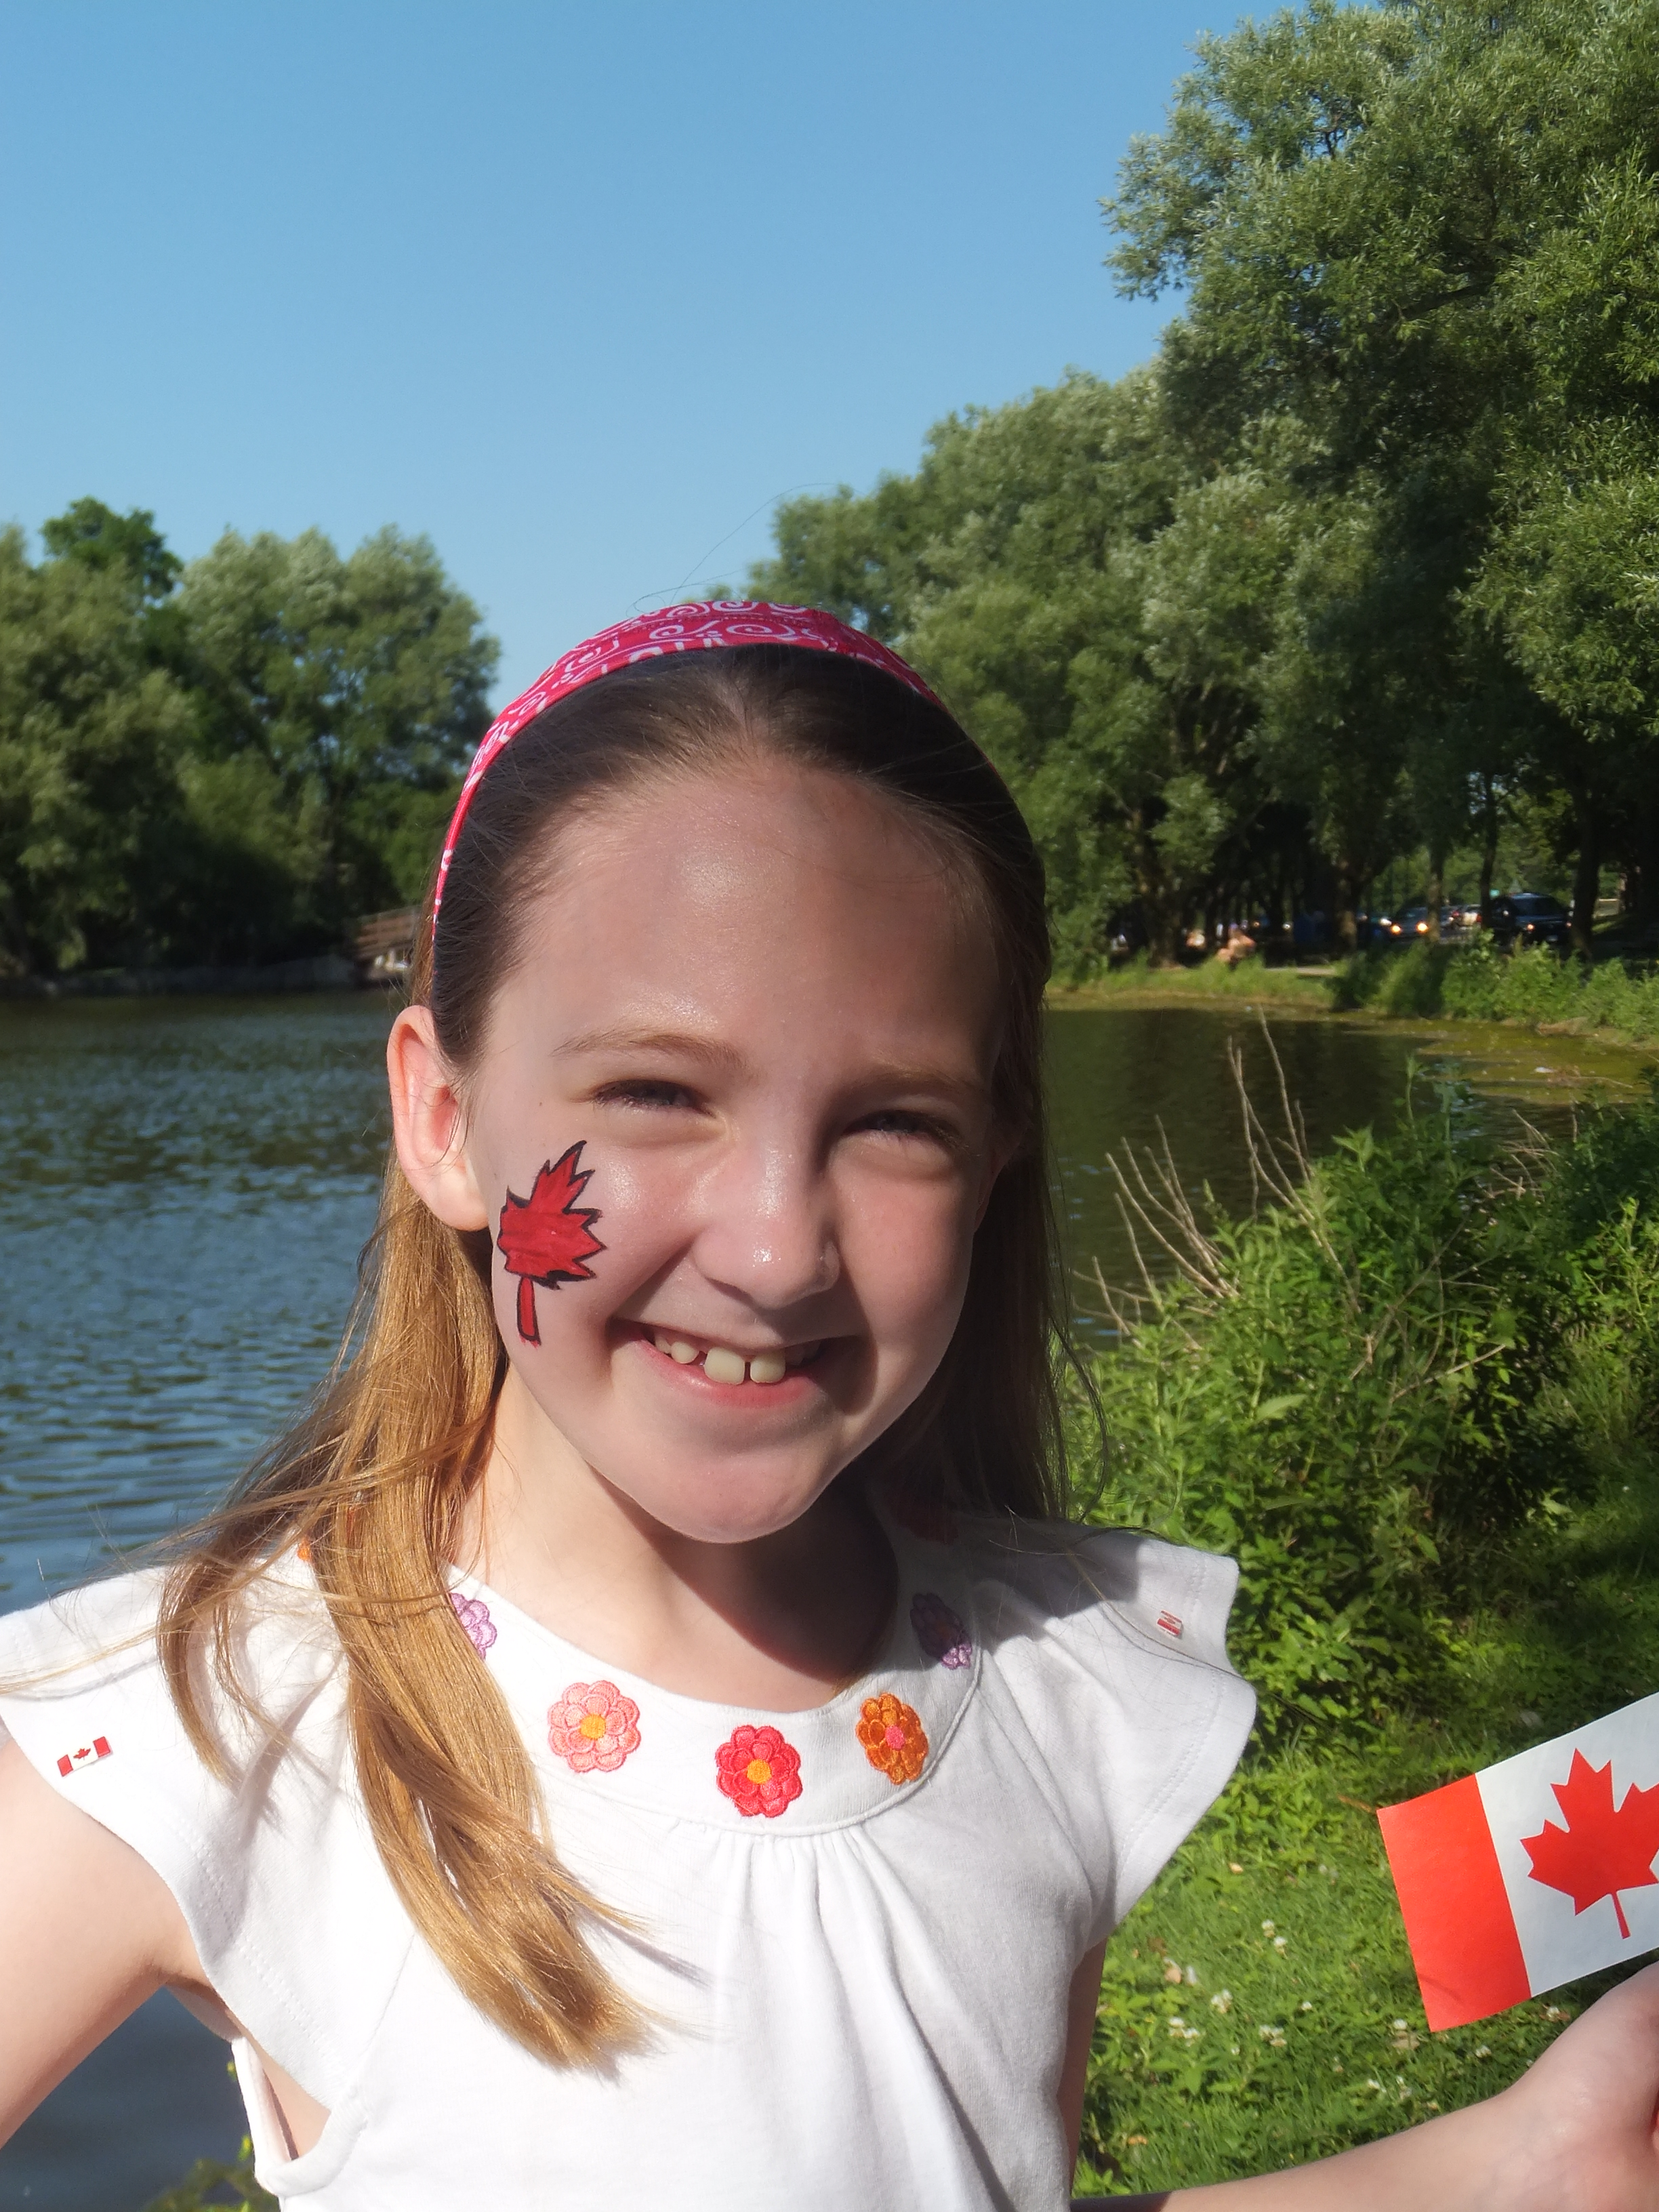 Canada Day in Stratford